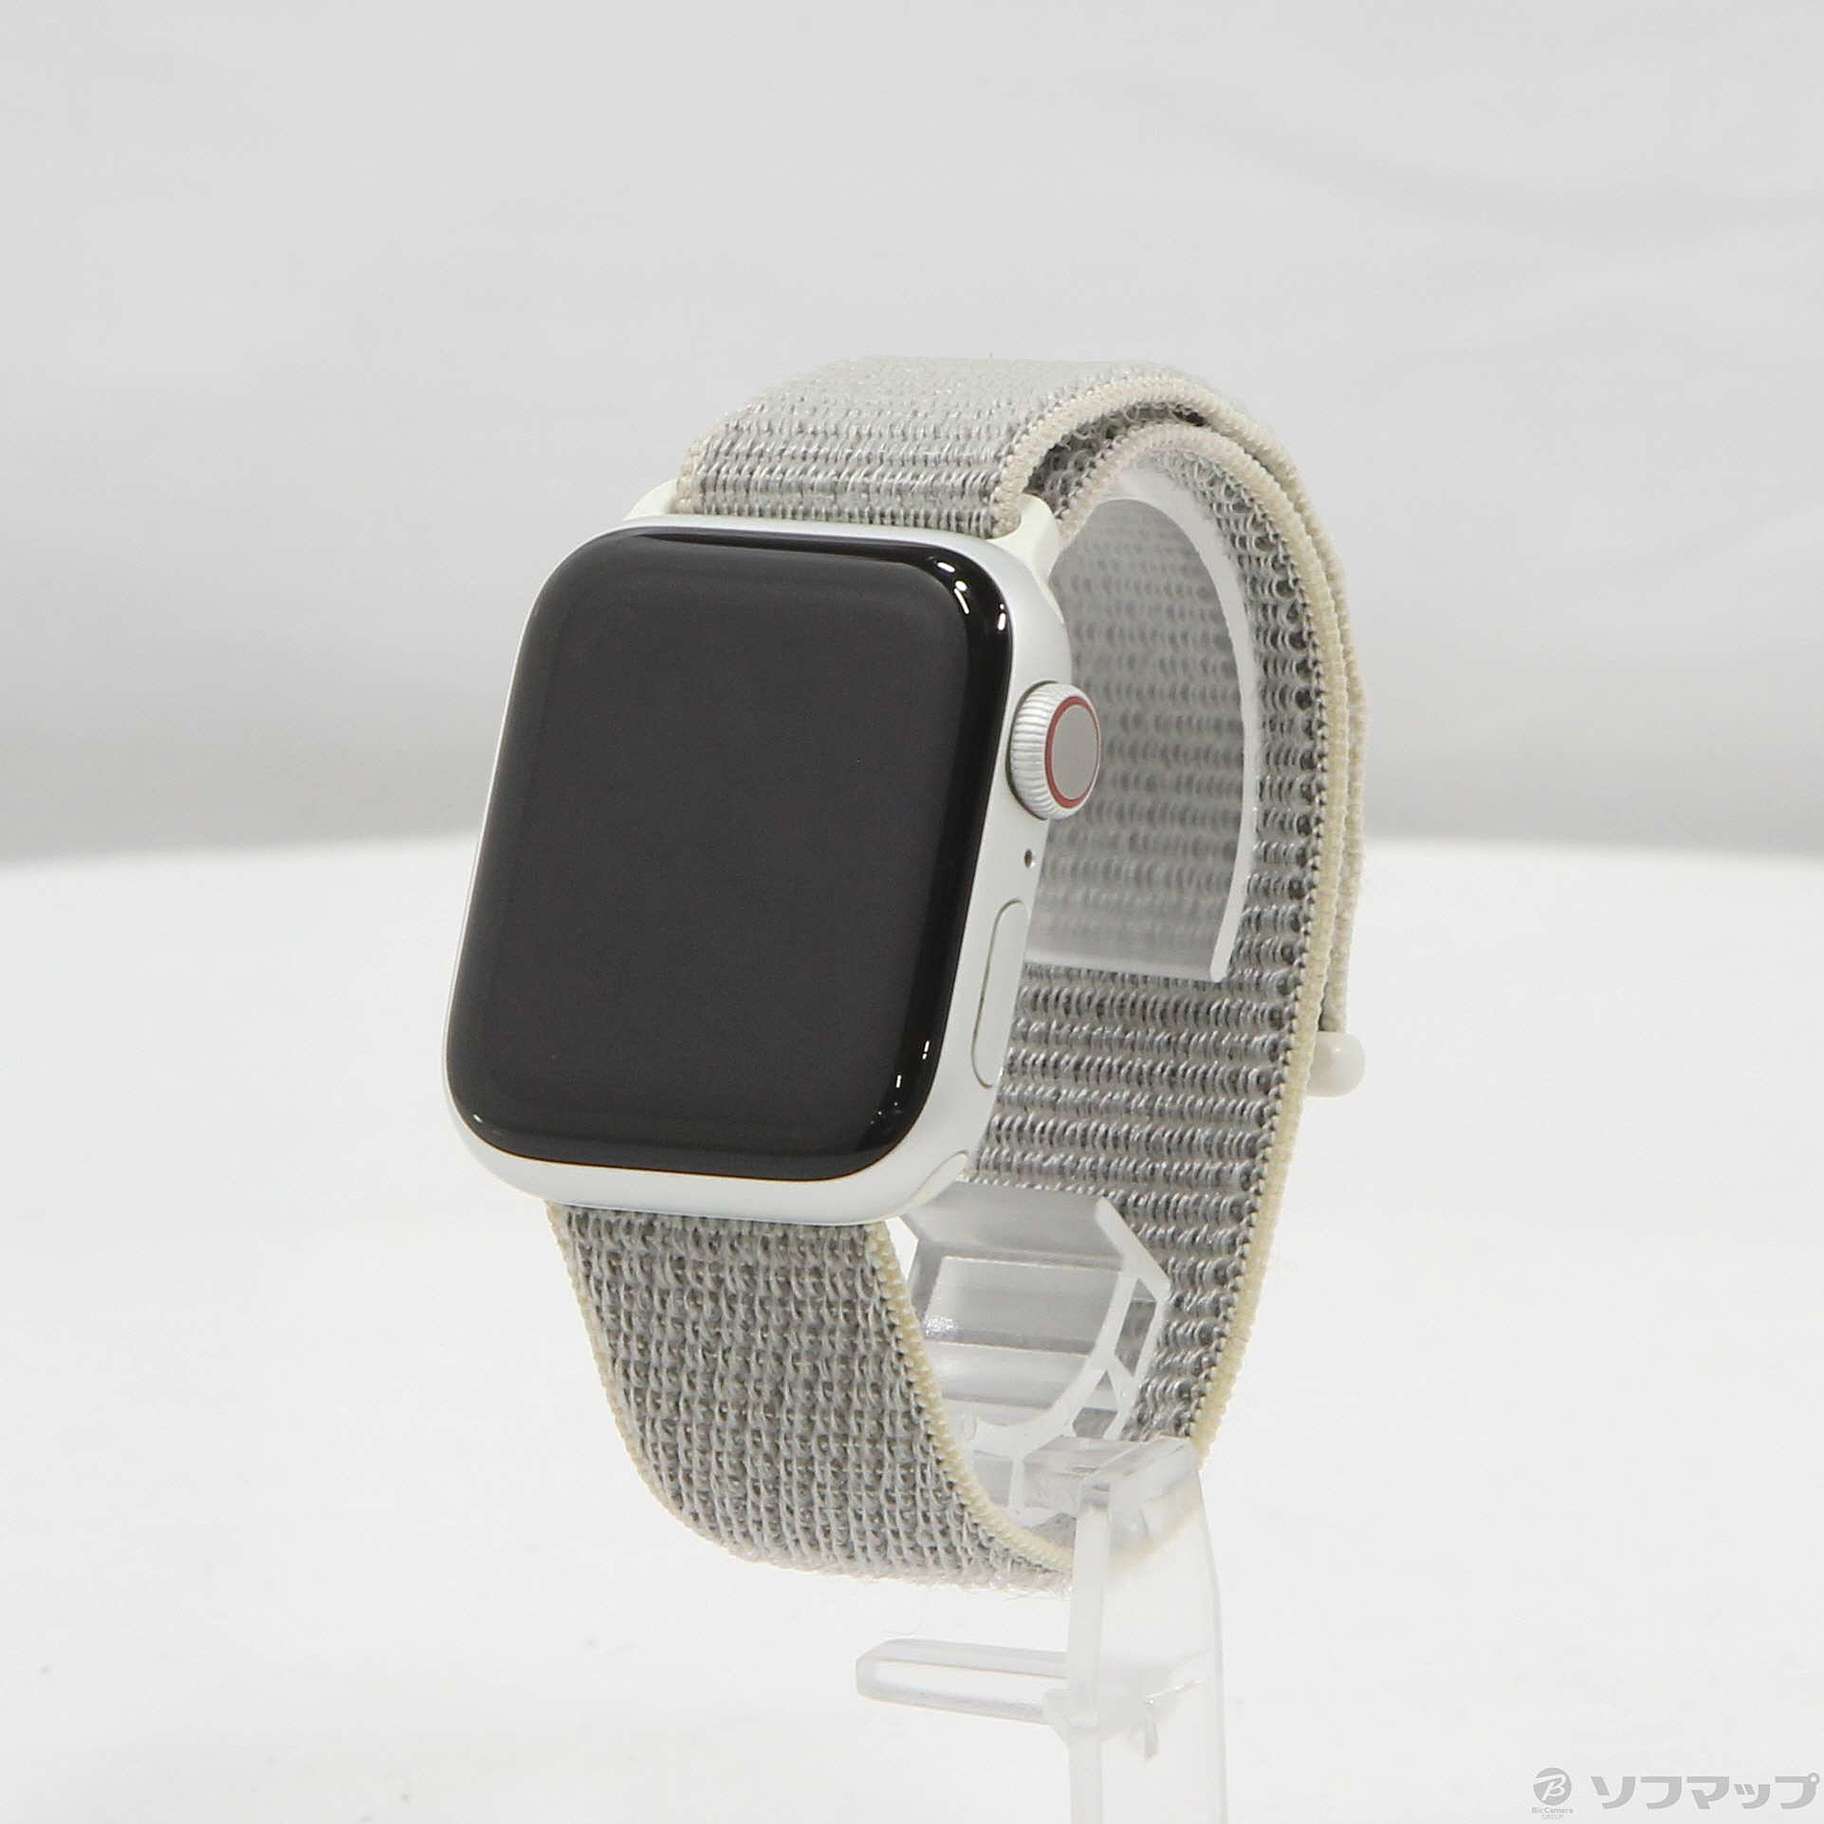 中古品〕 Apple Watch Series 4 GPS + Cellular 40mm シルバー 